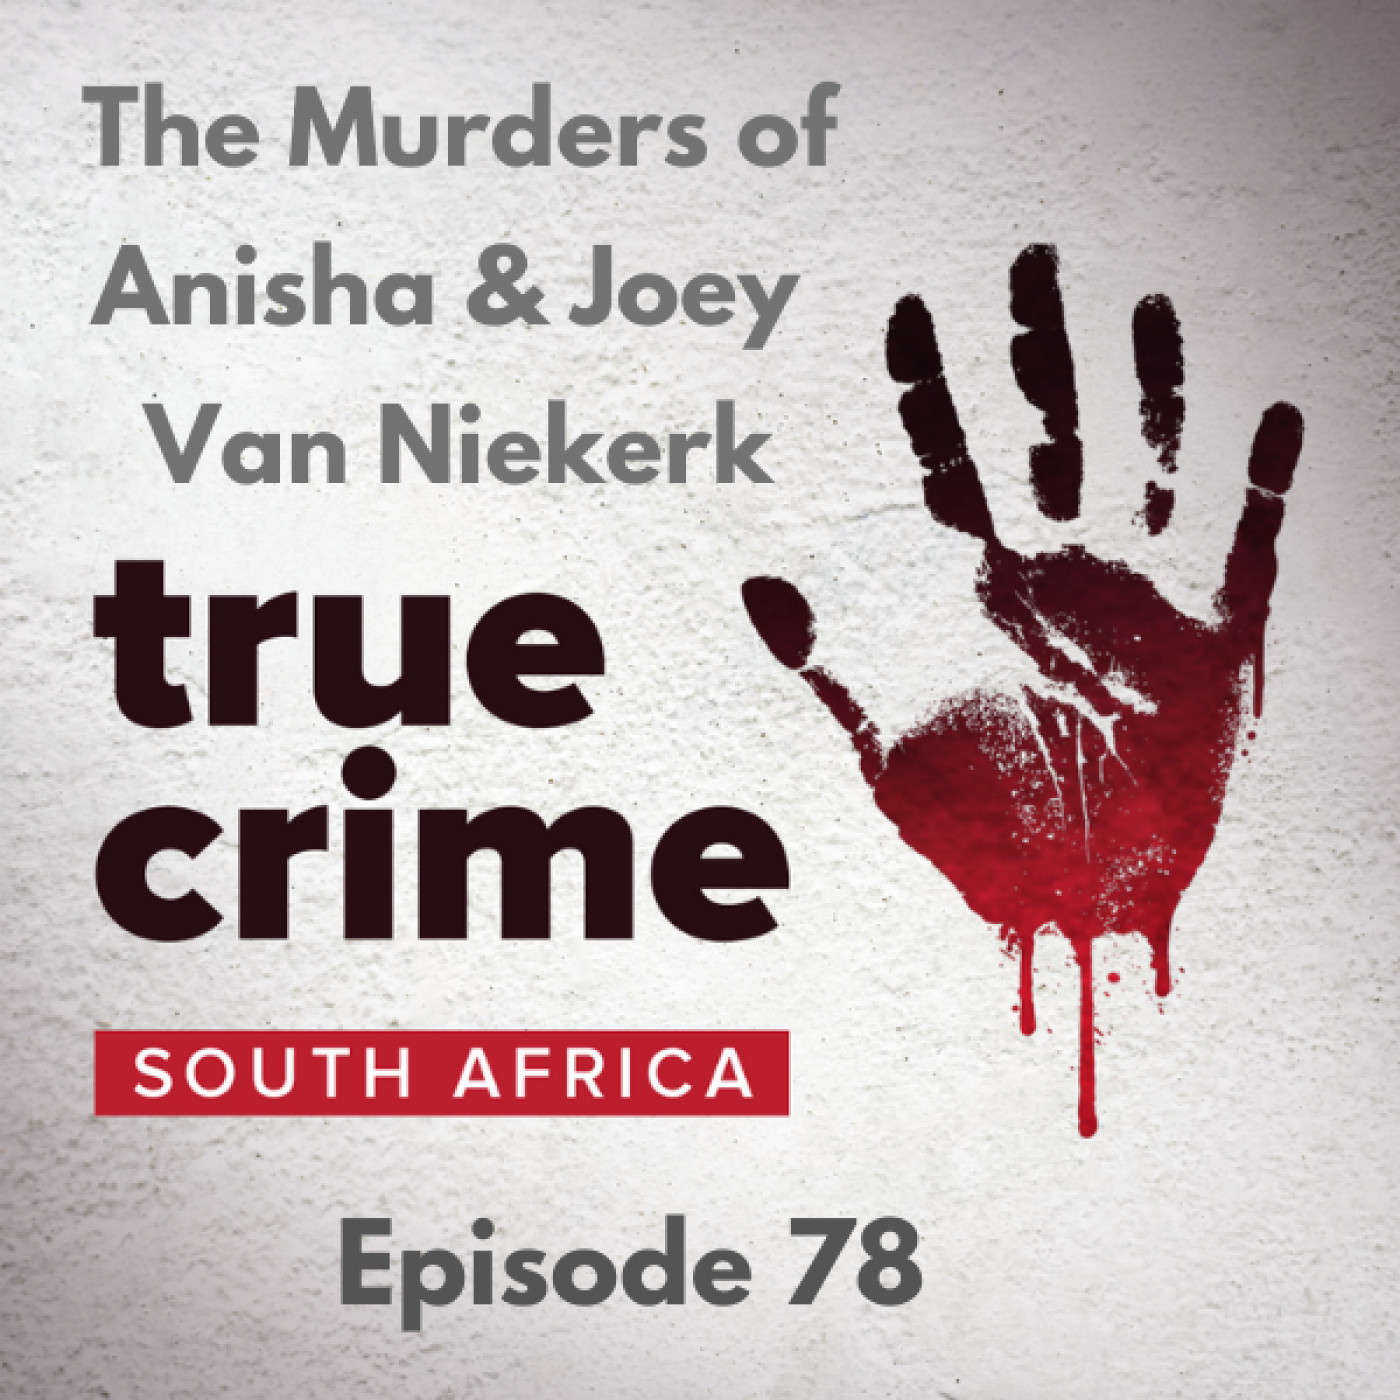 Episode 78 - The Murders of Anisha & Joey Van Niekerk